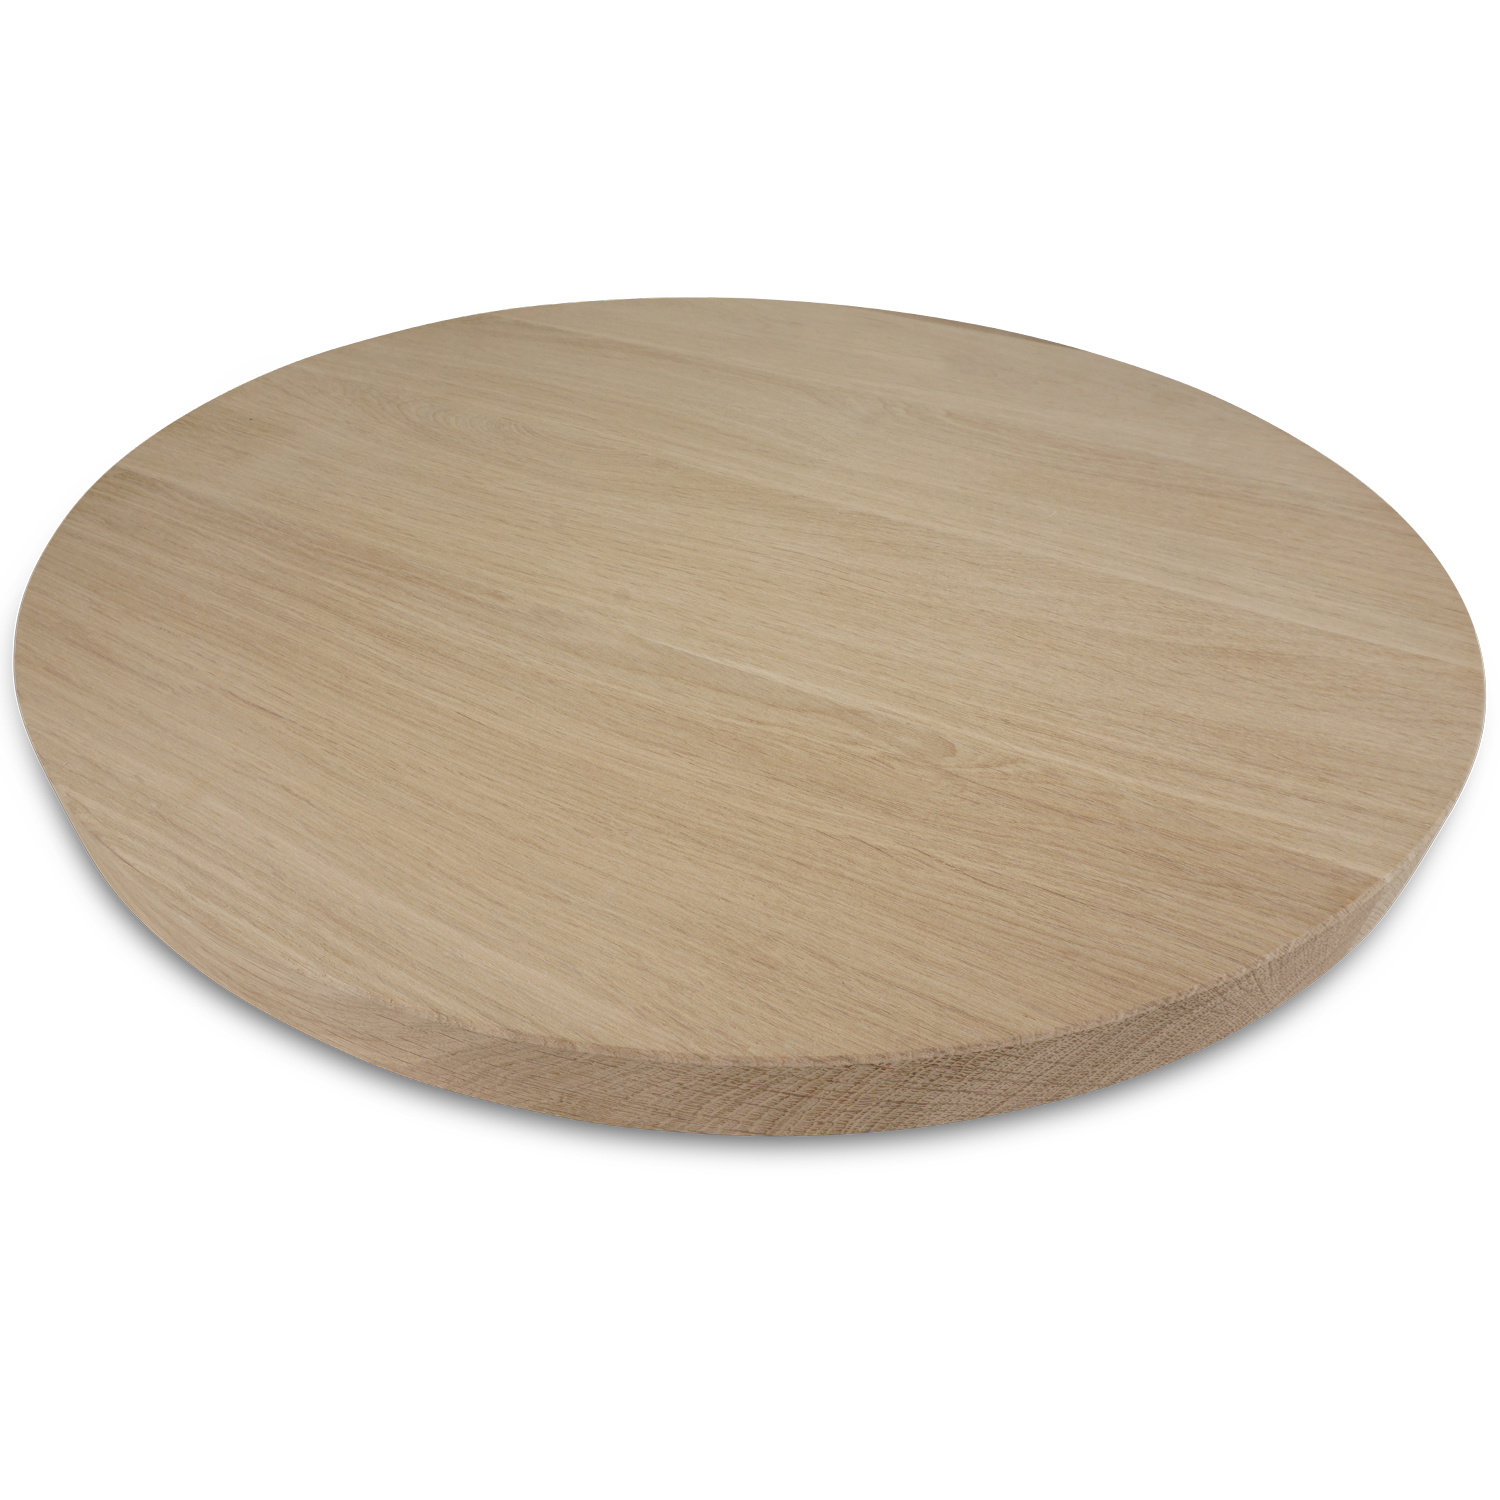  Eiken tafelblad rond - 4 cm dik (1-laag) - Diverse afmetingen - optioneel geborsteld - foutvrij Europees eikenhout - met brede lamellen (circa 10-12 cm) - verlijmd kd 10-12%